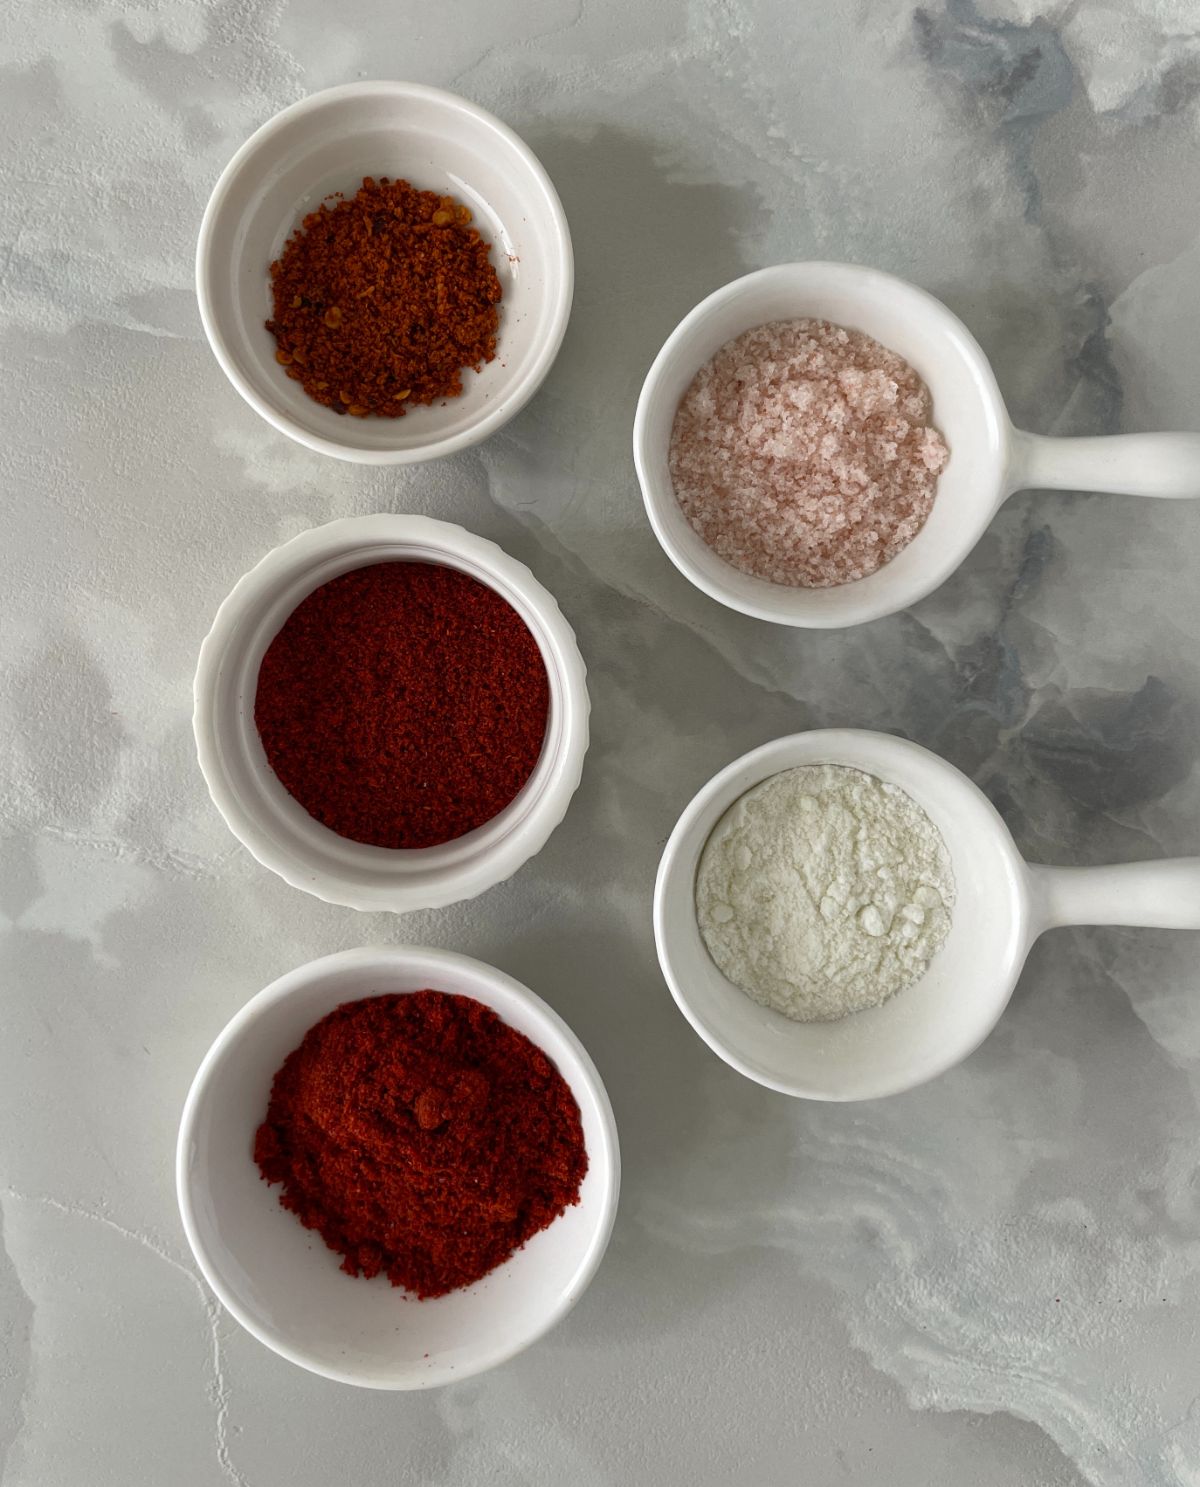 ingredients for the tajin seasoning mix